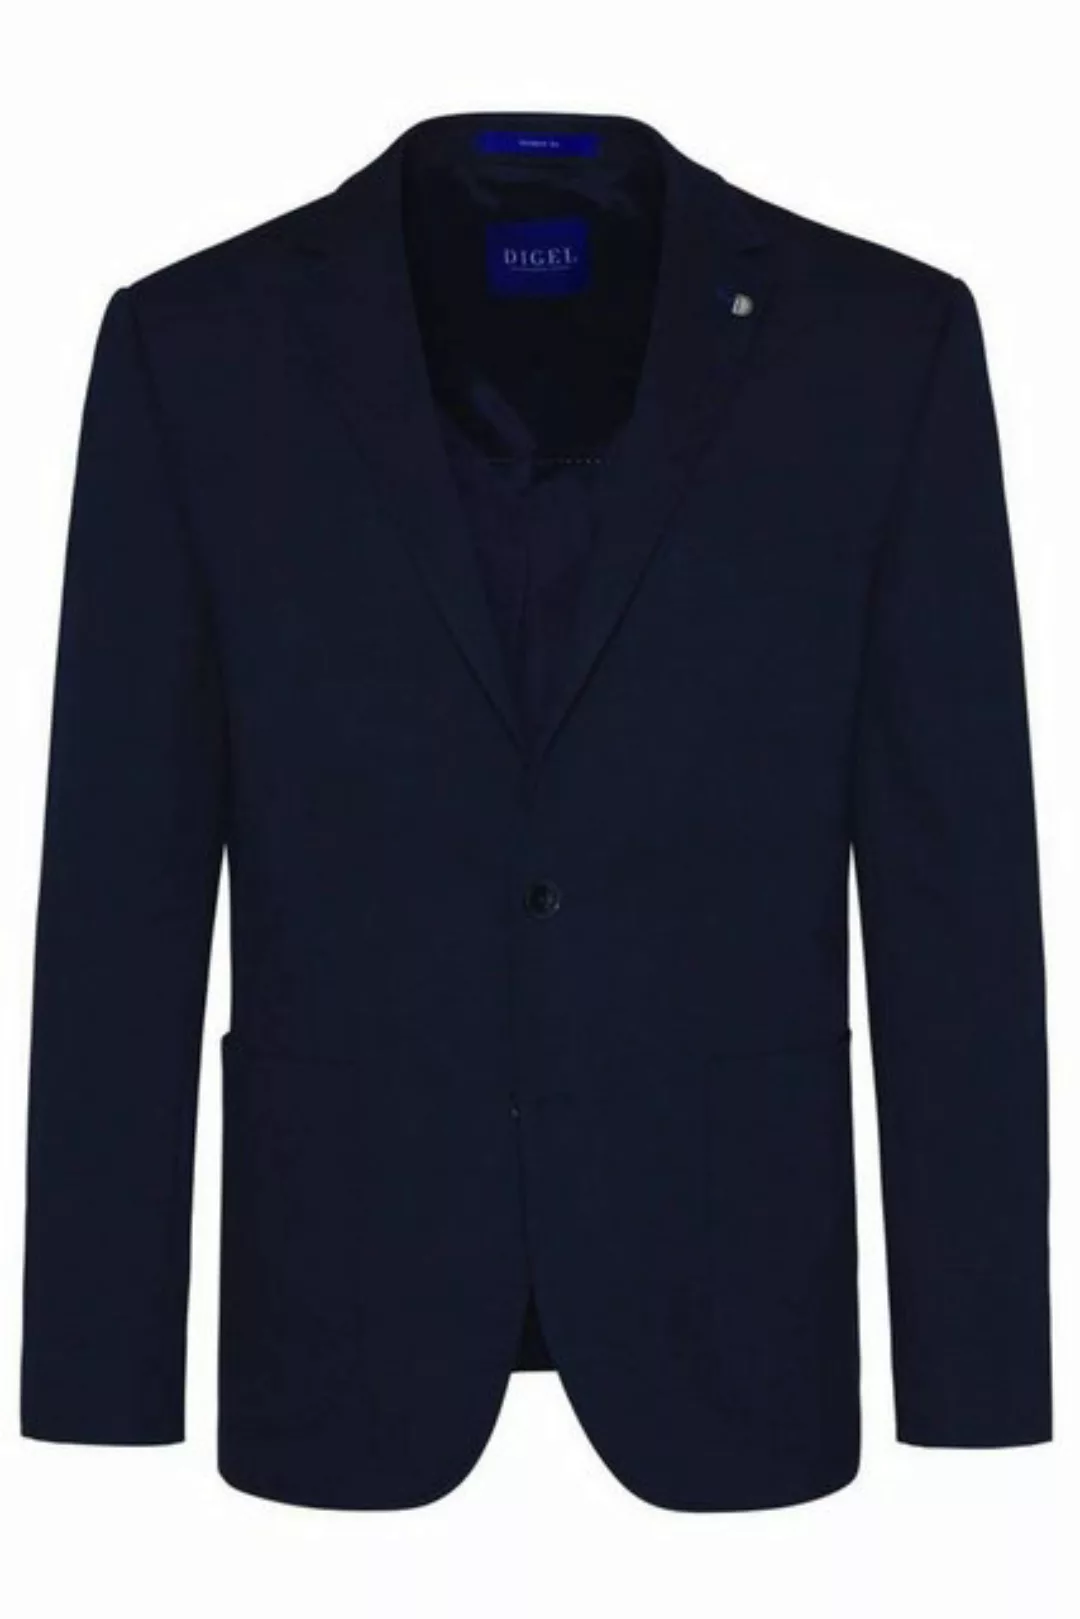 DIGEL Anzug Edison-Sergio 120163+110219/99770/20 günstig online kaufen